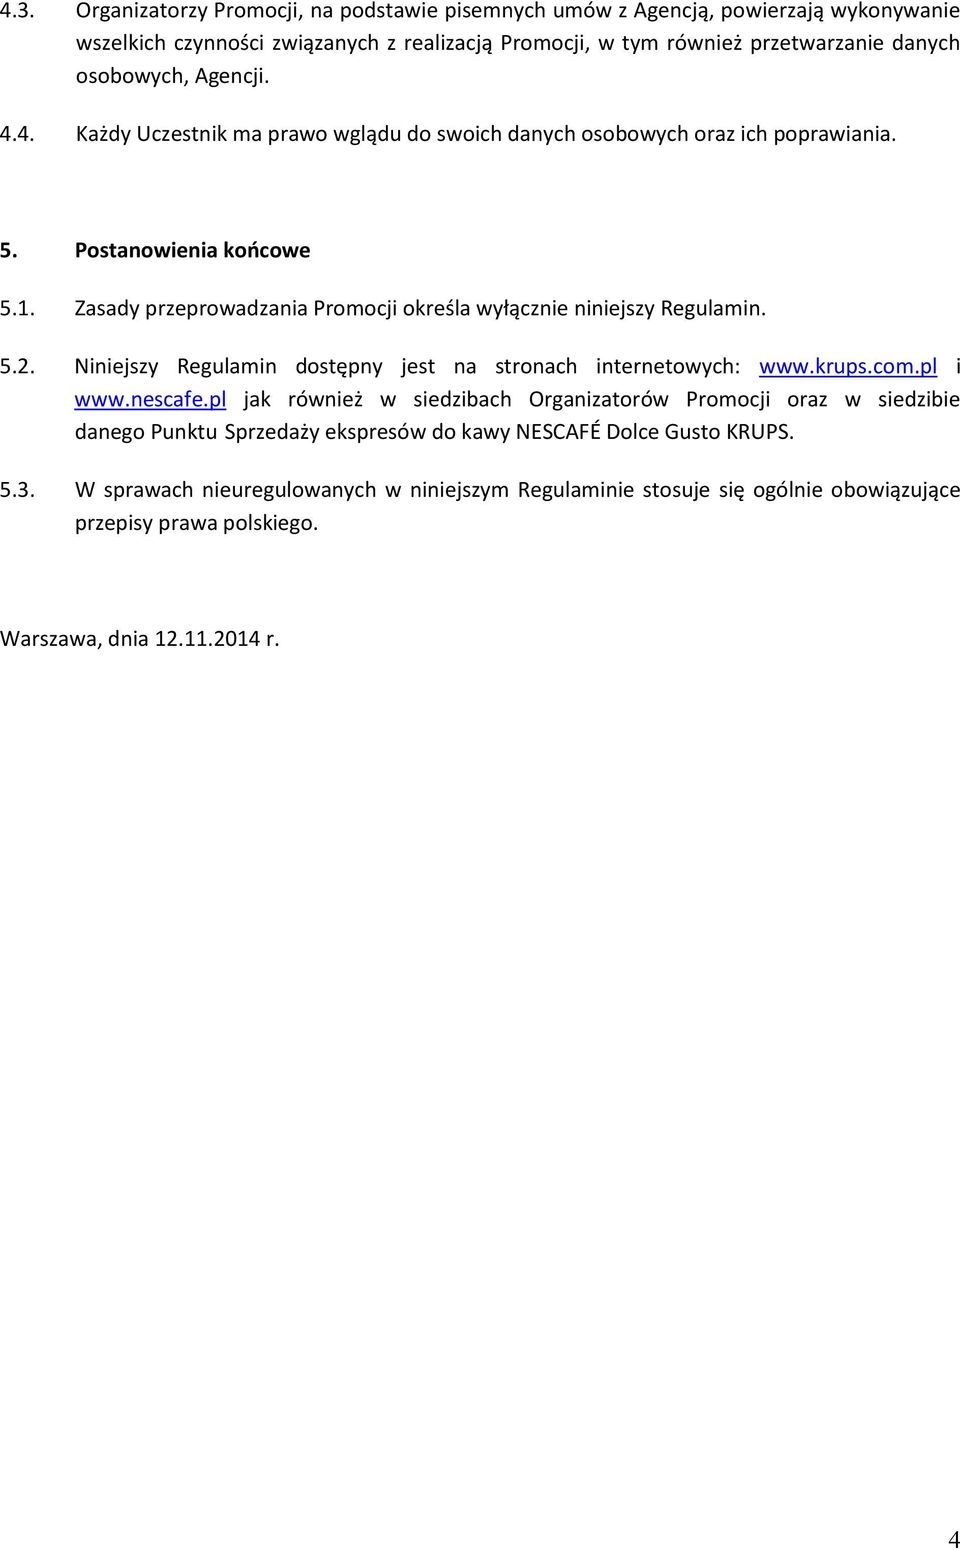 Zasady przeprowadzania Promocji określa wyłącznie niniejszy Regulamin. 5.2. Niniejszy Regulamin dostępny jest na stronach internetowych: www.krups.com.pl i www.nescafe.